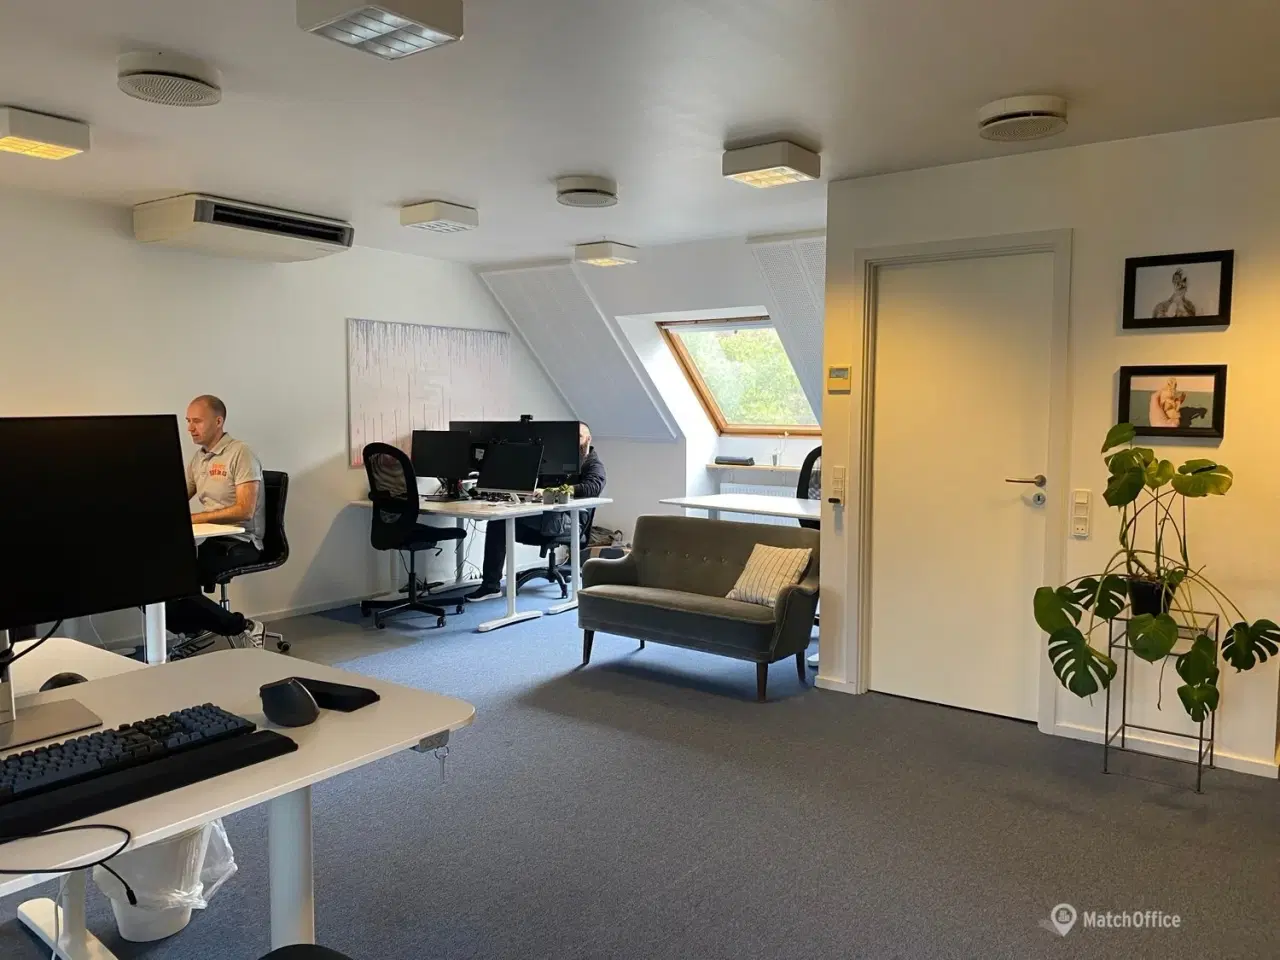 Billede 2 - Til leje: Coworking på Lyngby Hovedgade 53C, Storkøbenhavn (3.0 - 155.0 m2)